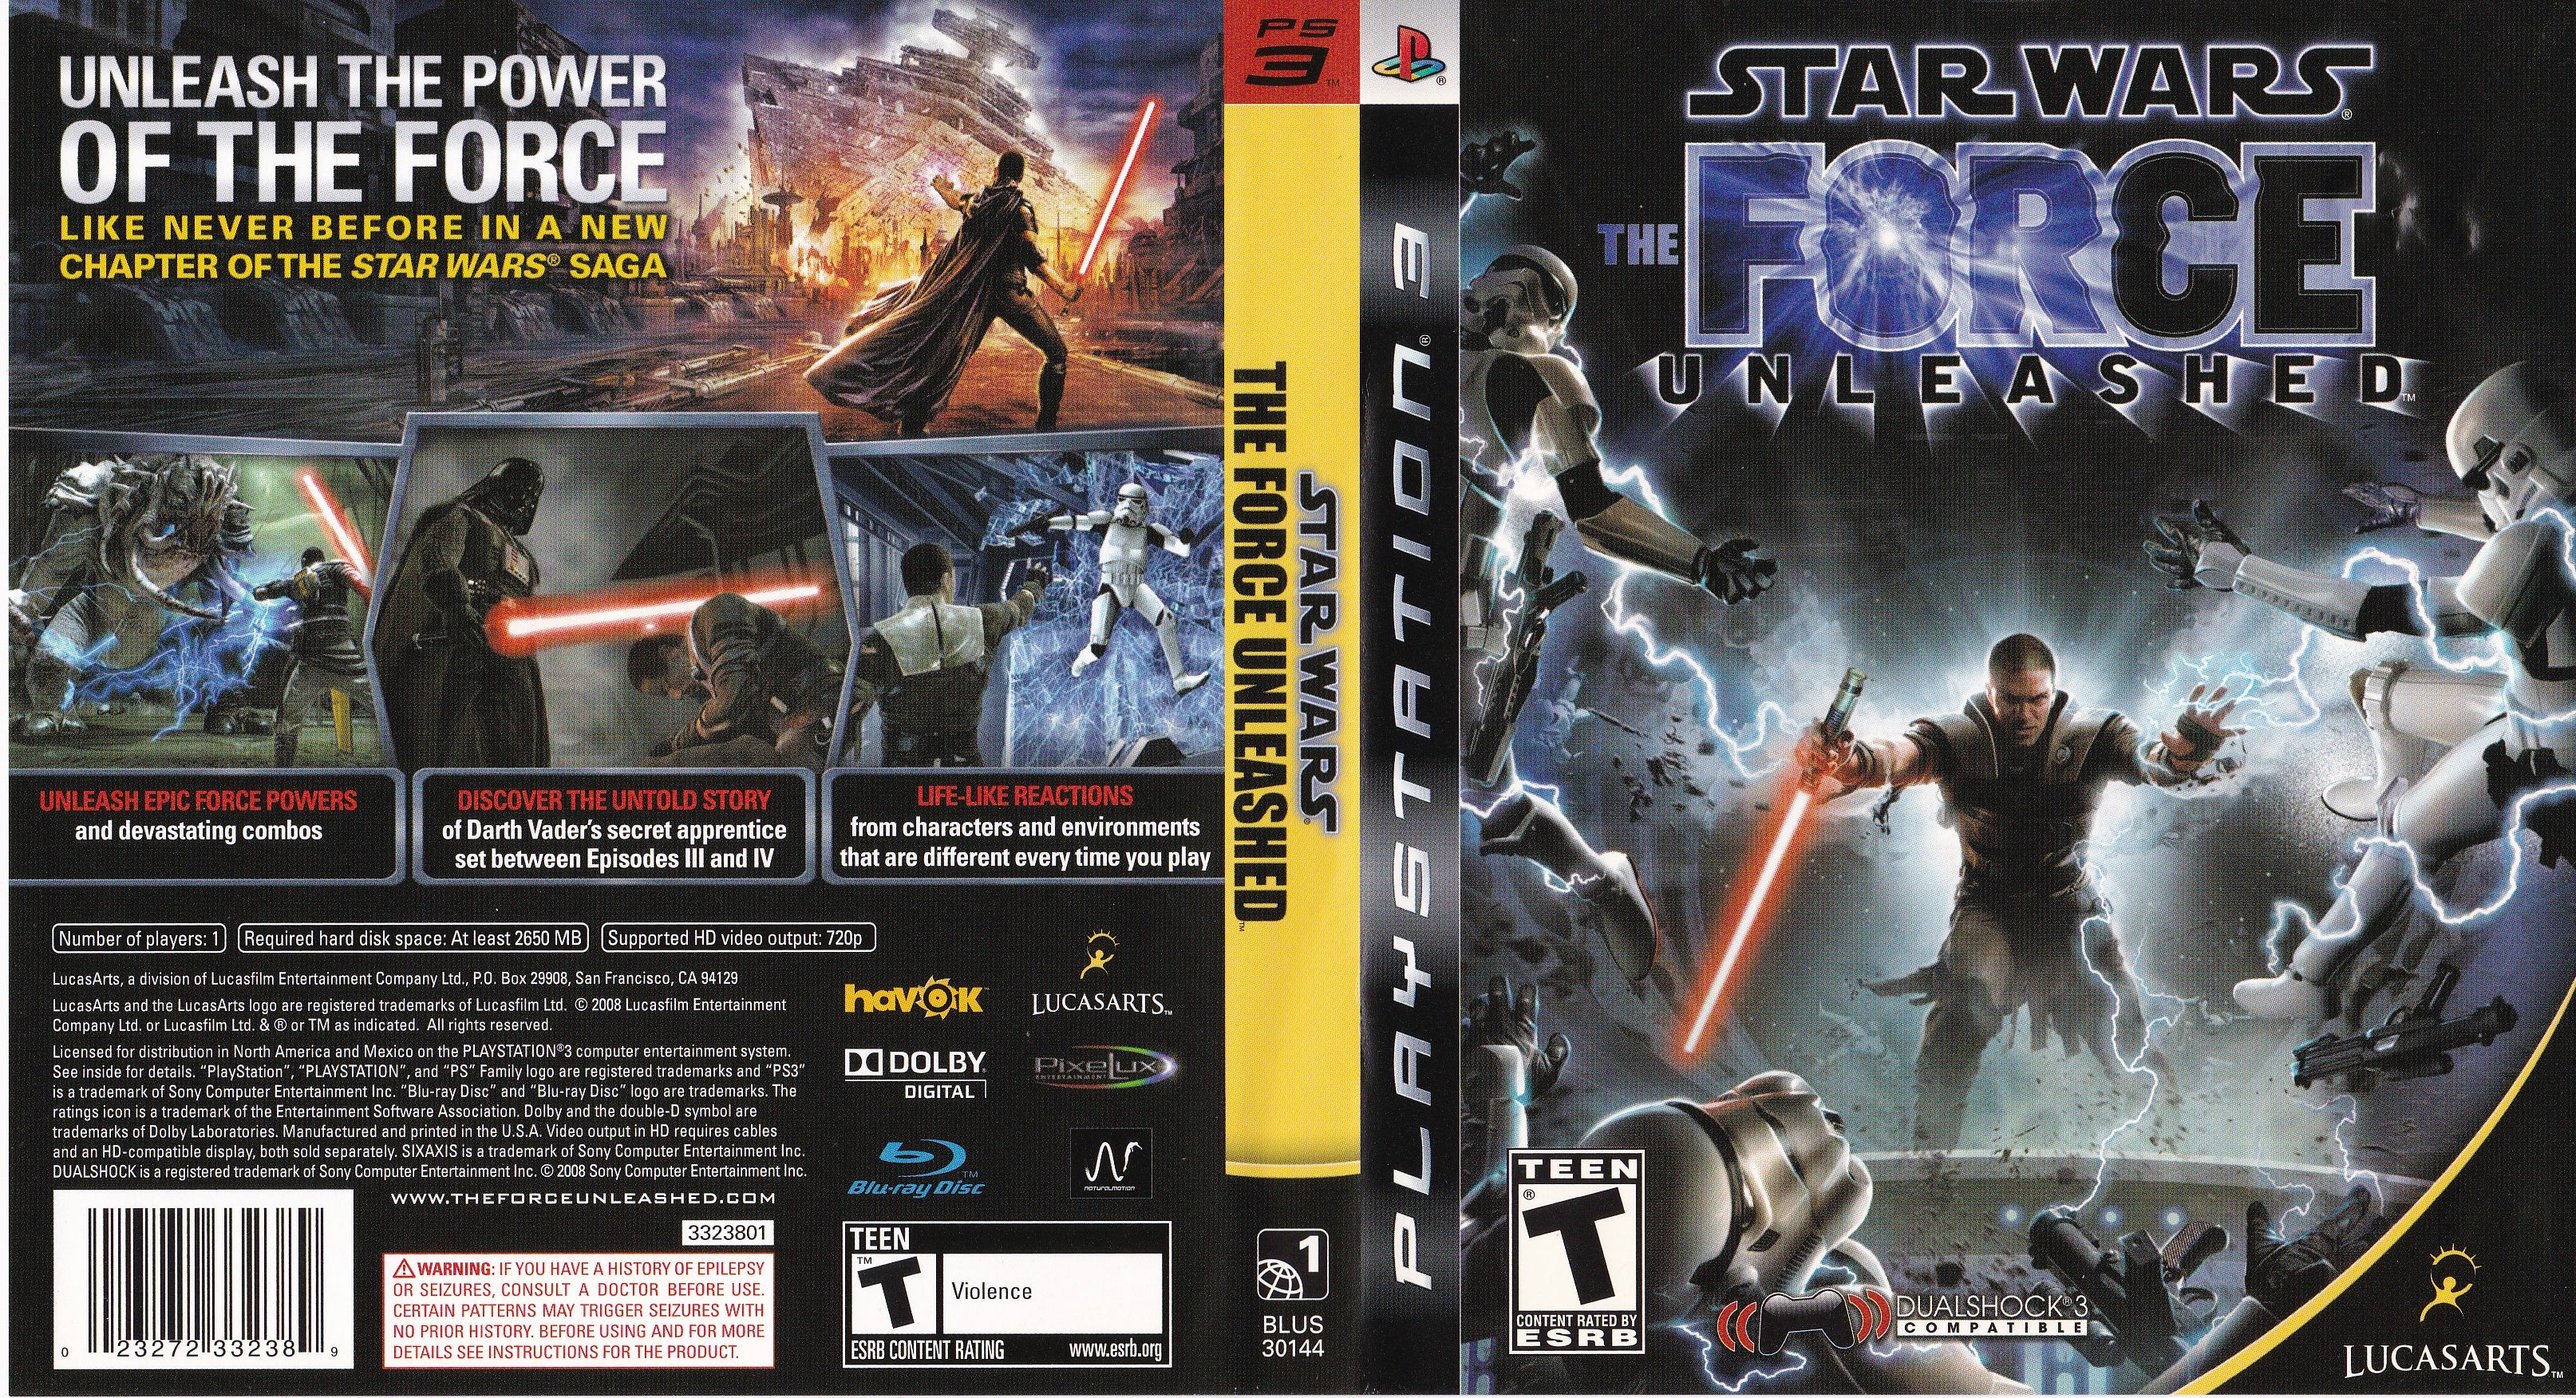 Jogo Star Wars: The Force Unleashed - PS3 - MeuGameUsado